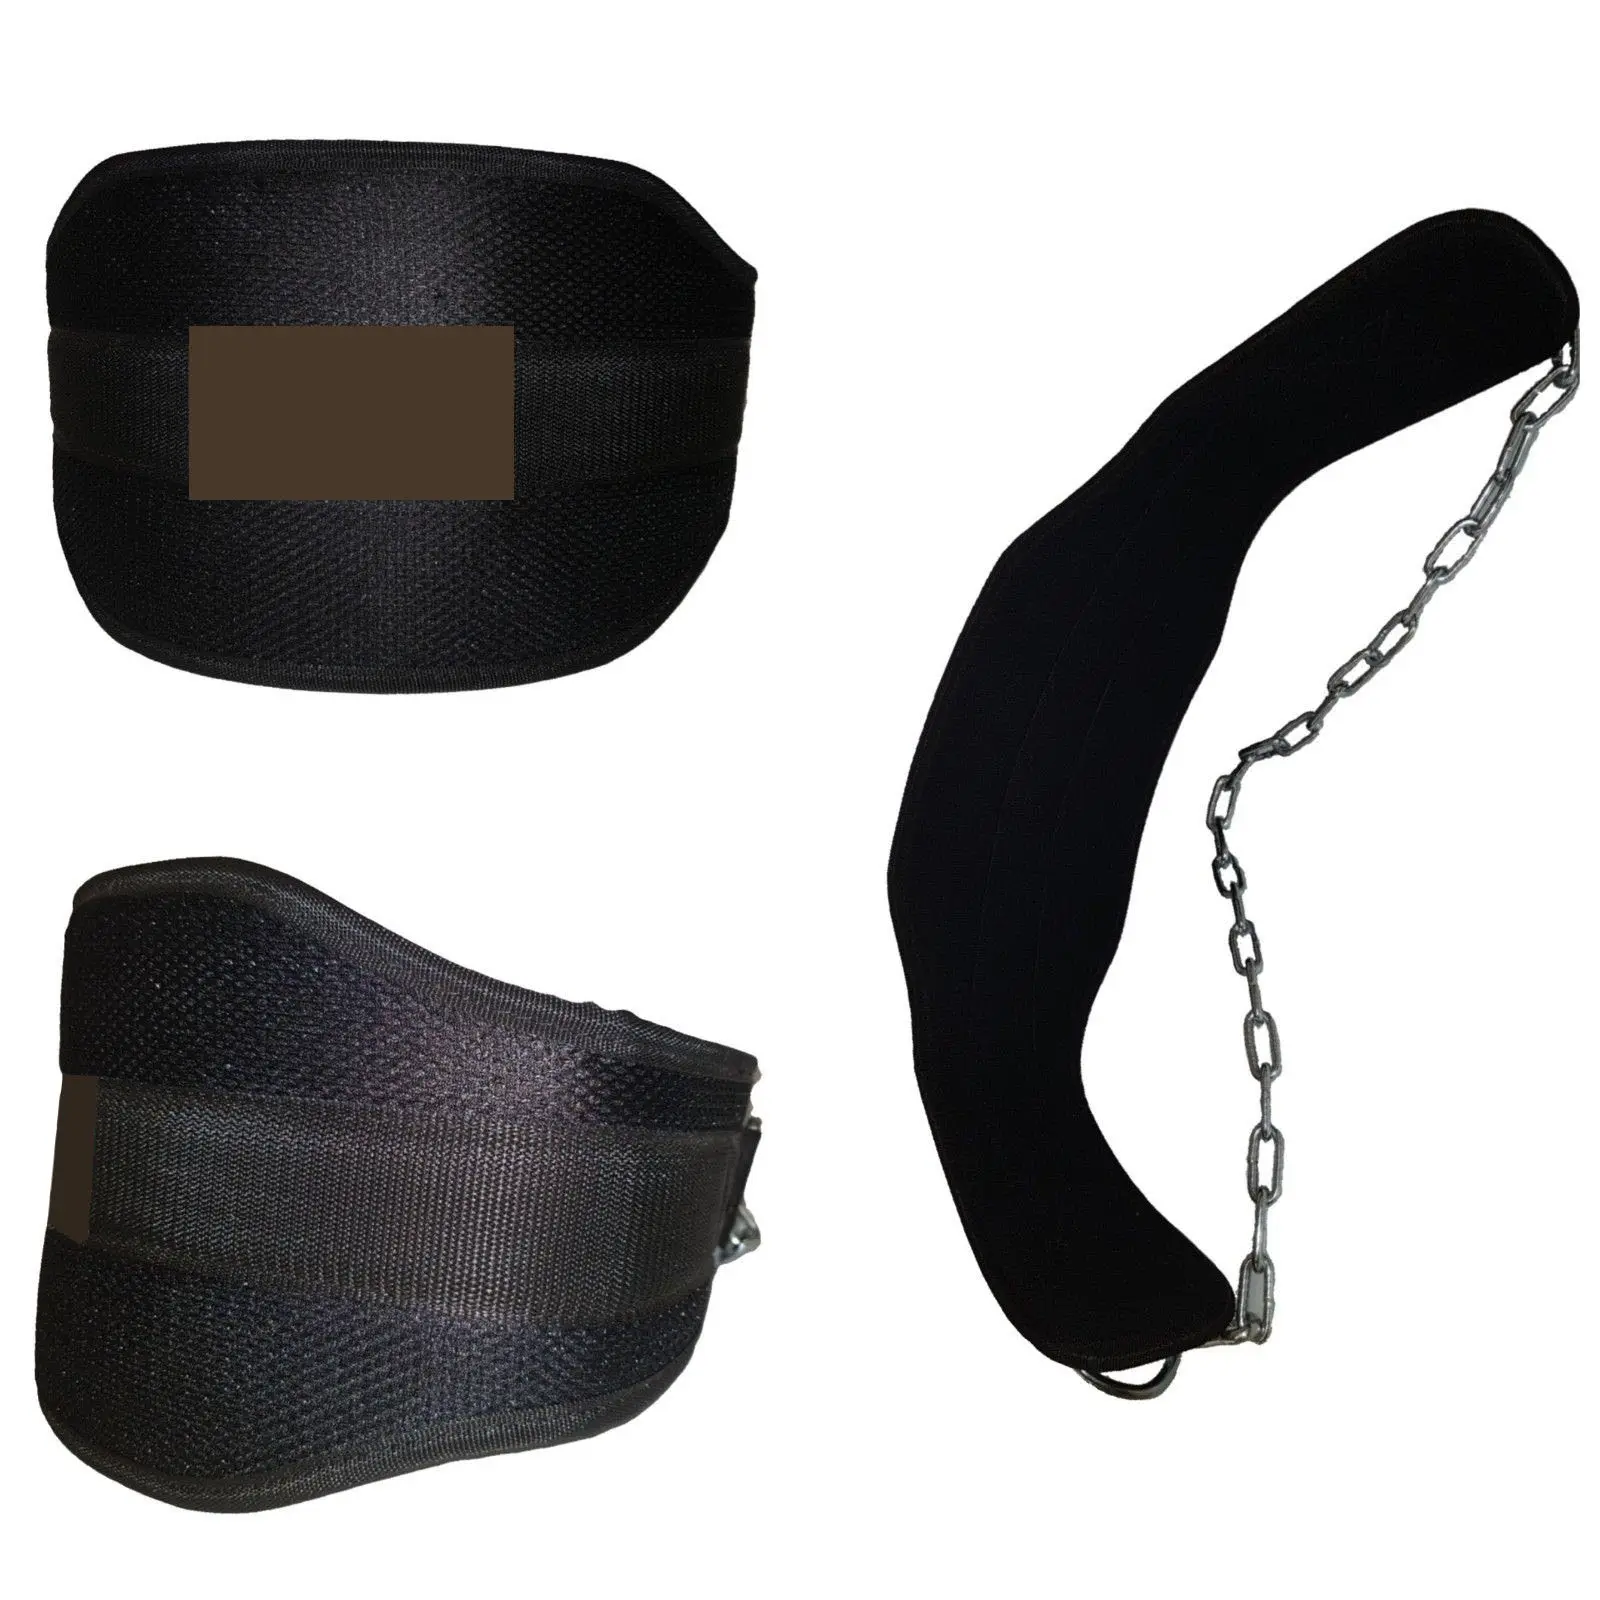 Cintura di alta qualità per sollevamento pesi cose di qualità produttore ingranaggi fitness cinture sportive design cintura Dip in Neoprene di ultima generazione